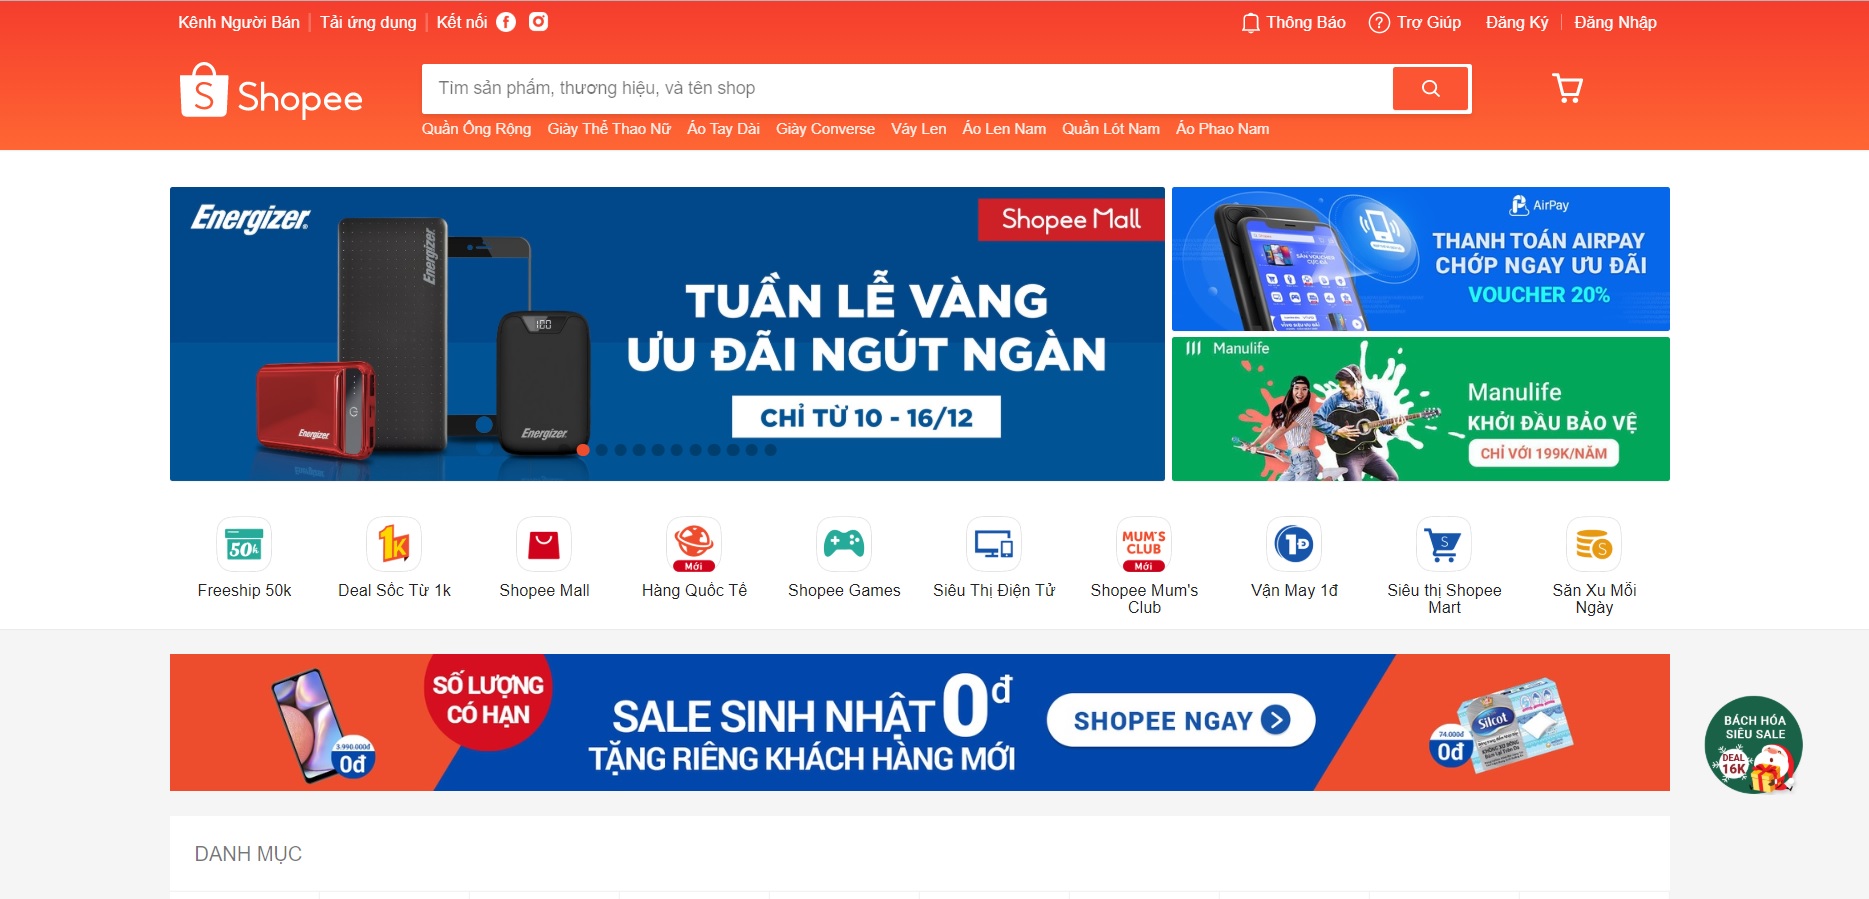 Shopee đang là một trong những sàn thương mại điện tử chiếm thị phần lớn tại thị trường Việt Nam